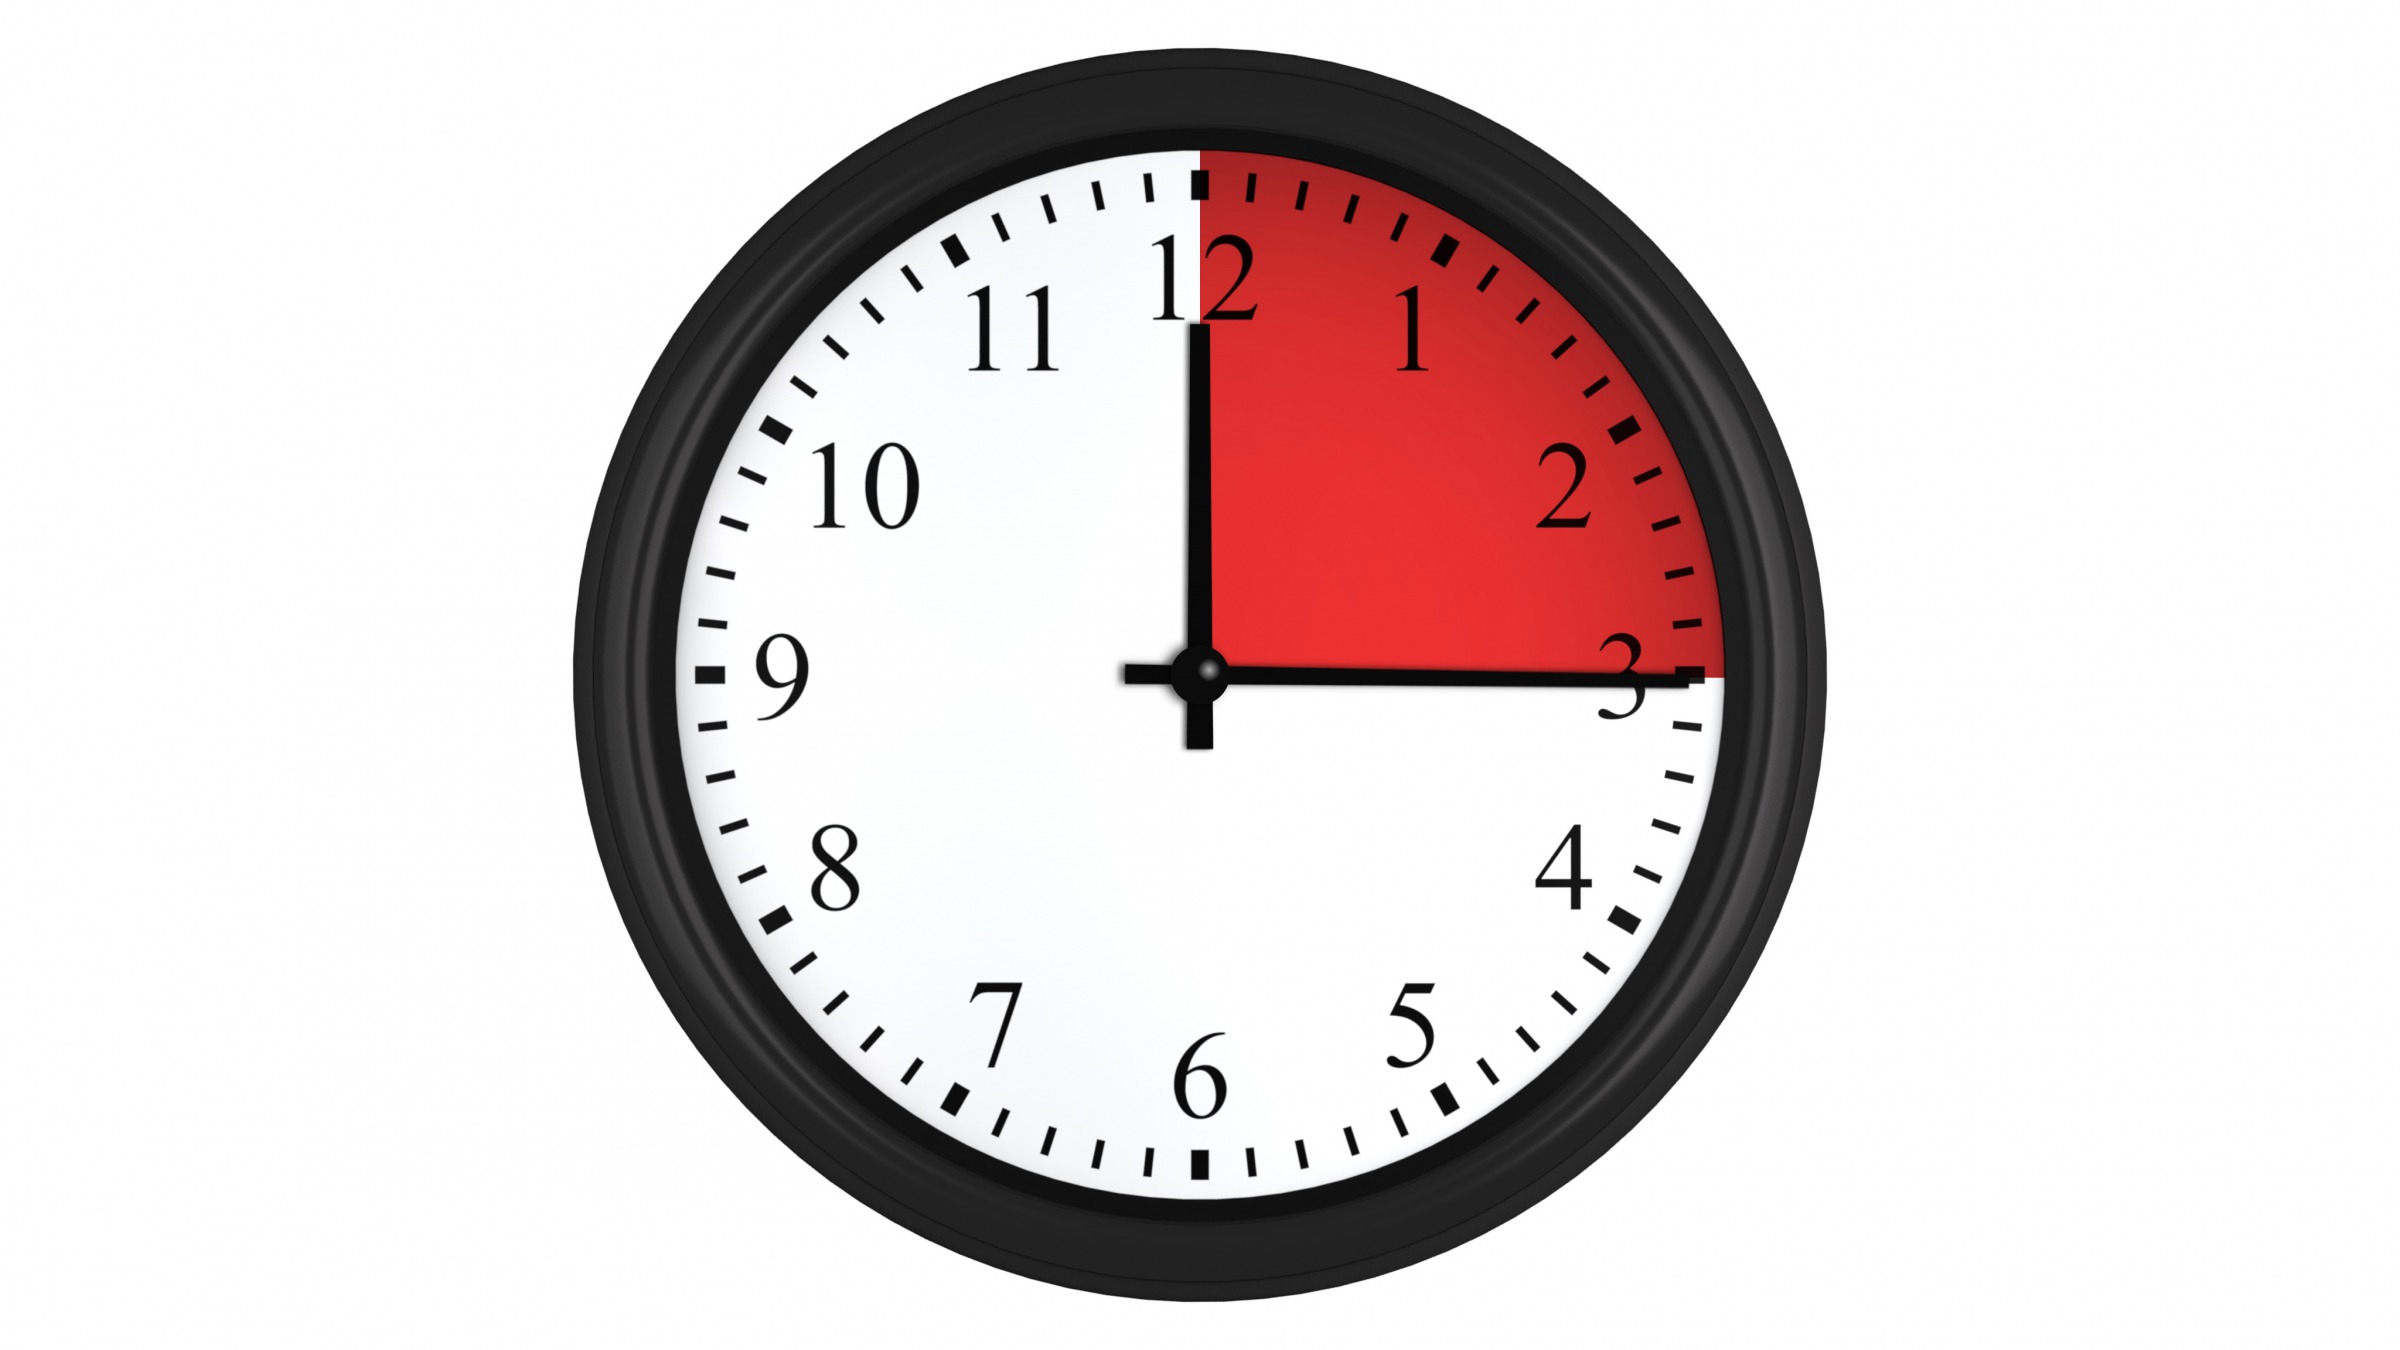 12 45 3 часа. 15 Минут на часах. Часы 15 часов. Часы циферблат 15 минут. Часы циферблат 3 часа.